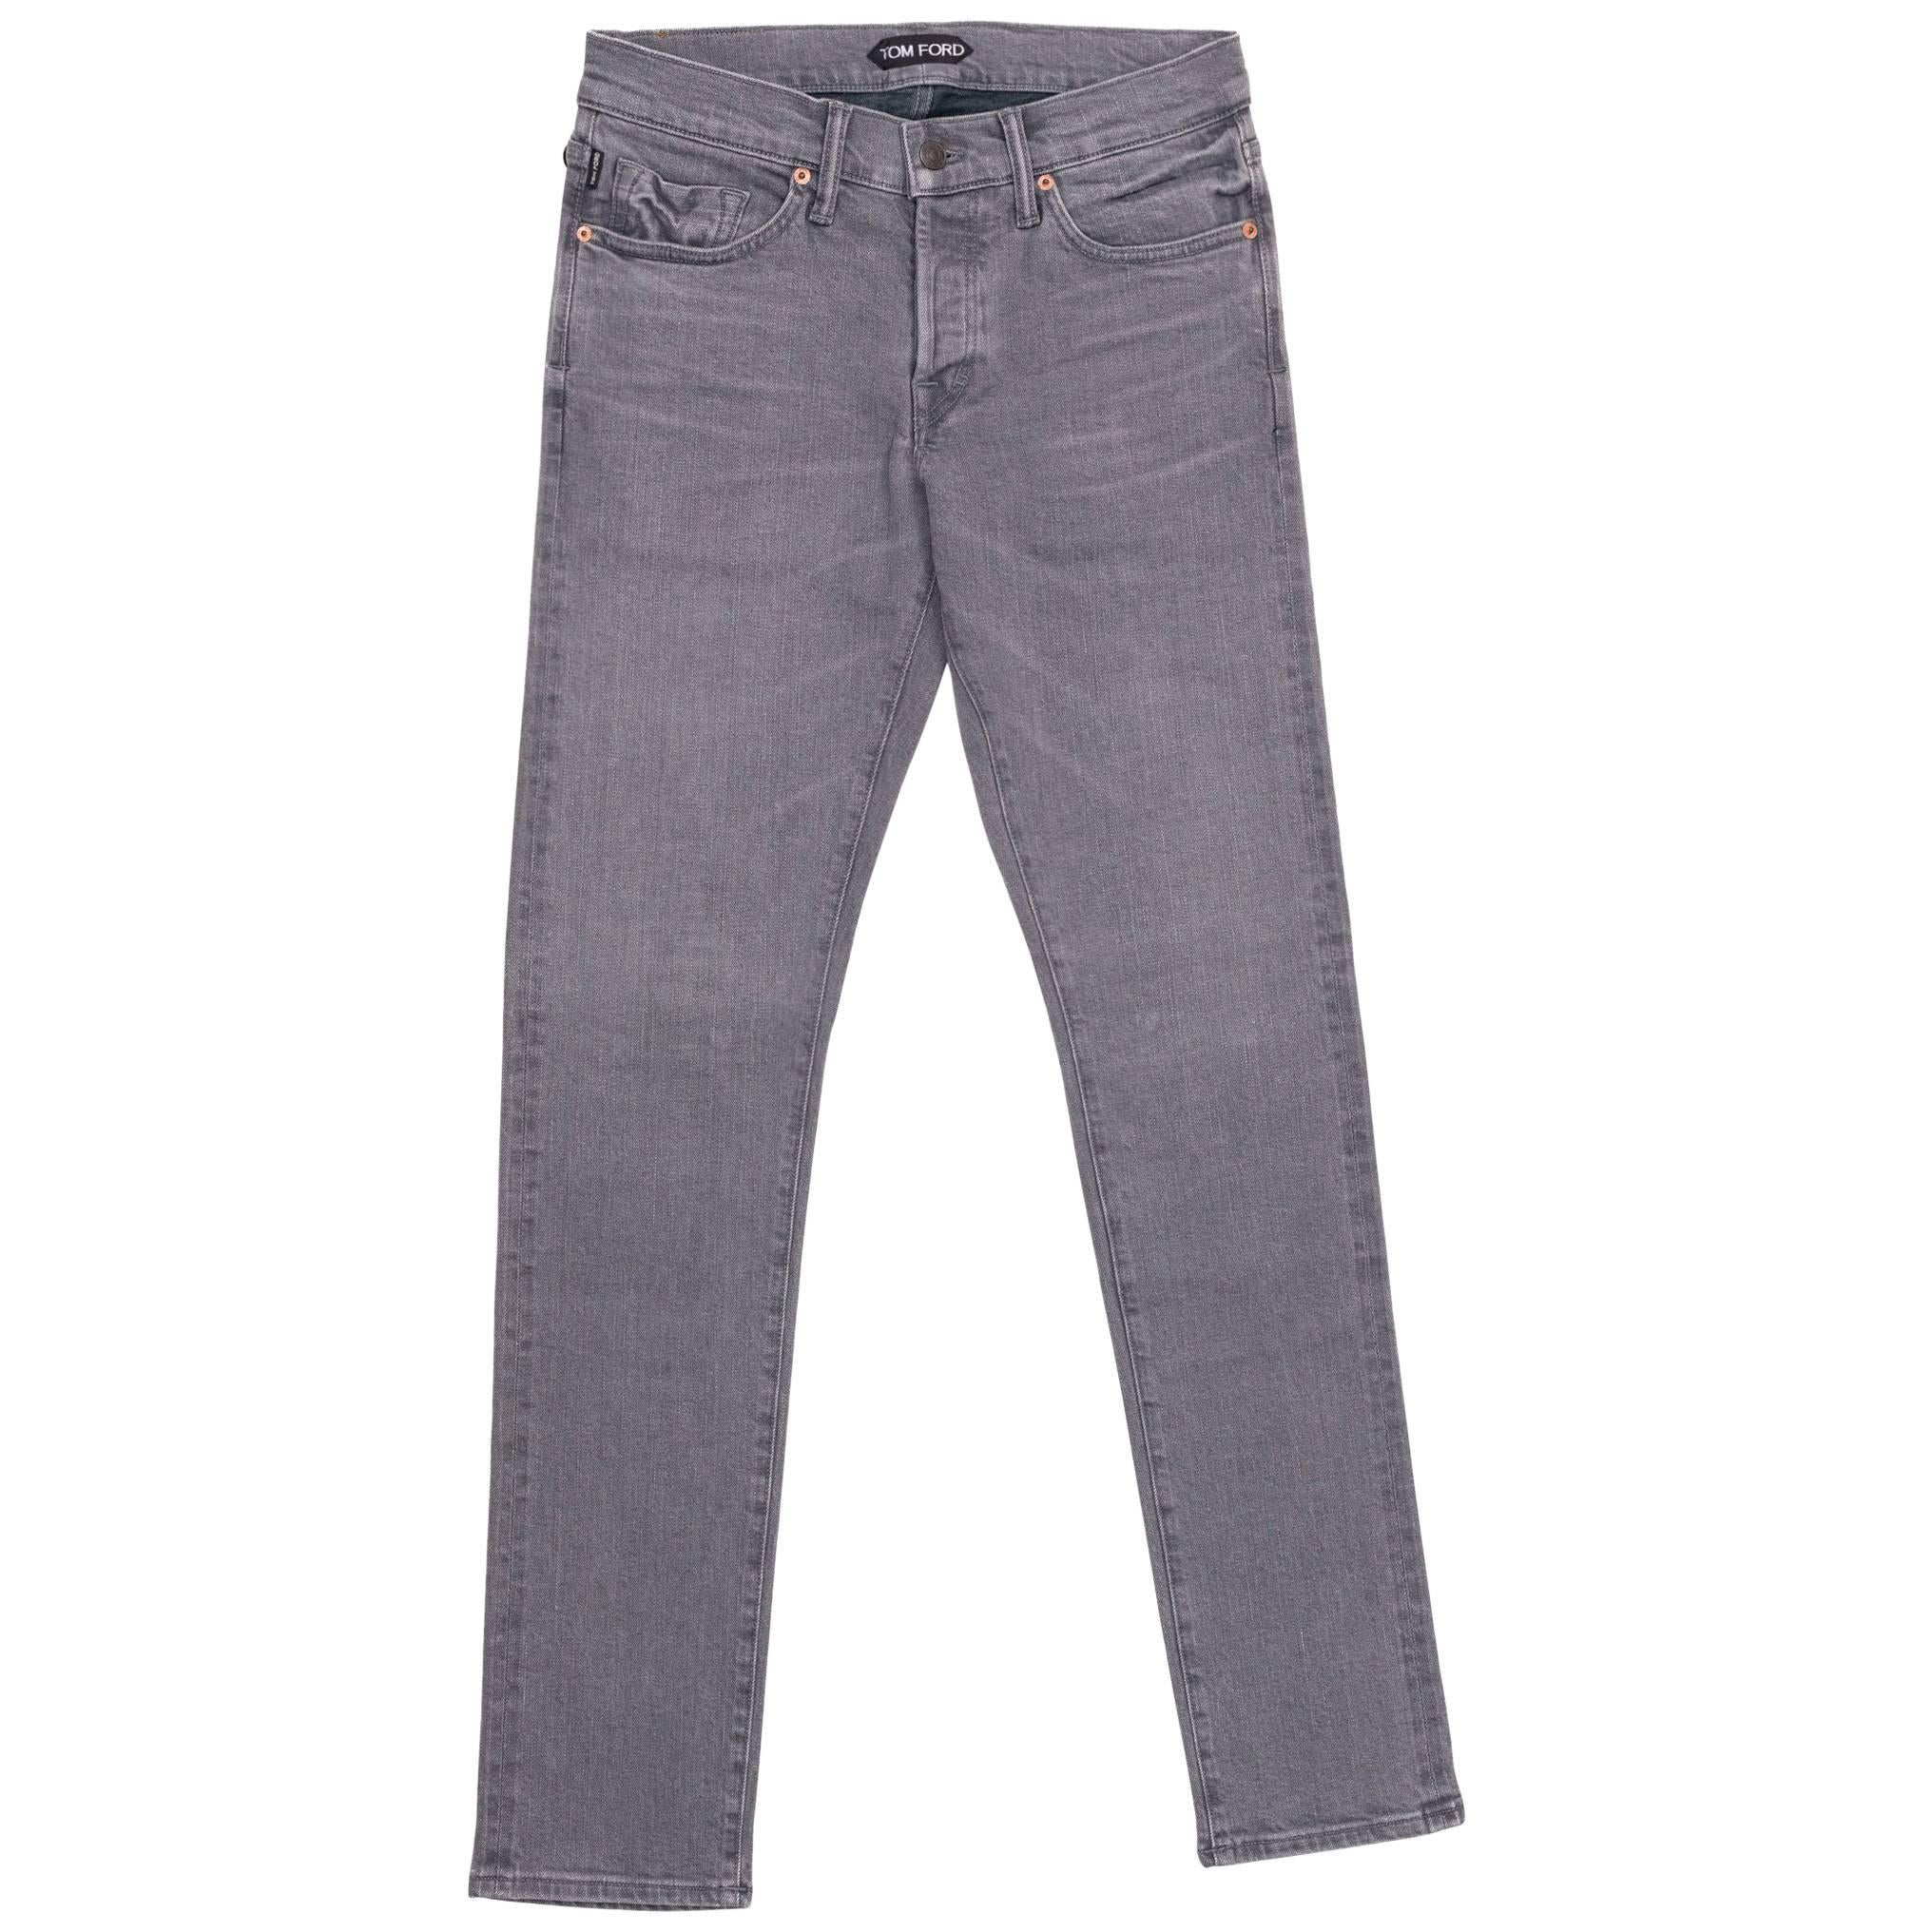 Tom Ford Selvedge Denim Jeans Medium Grey Wash Size 38 Slim Fit Model   For Sale